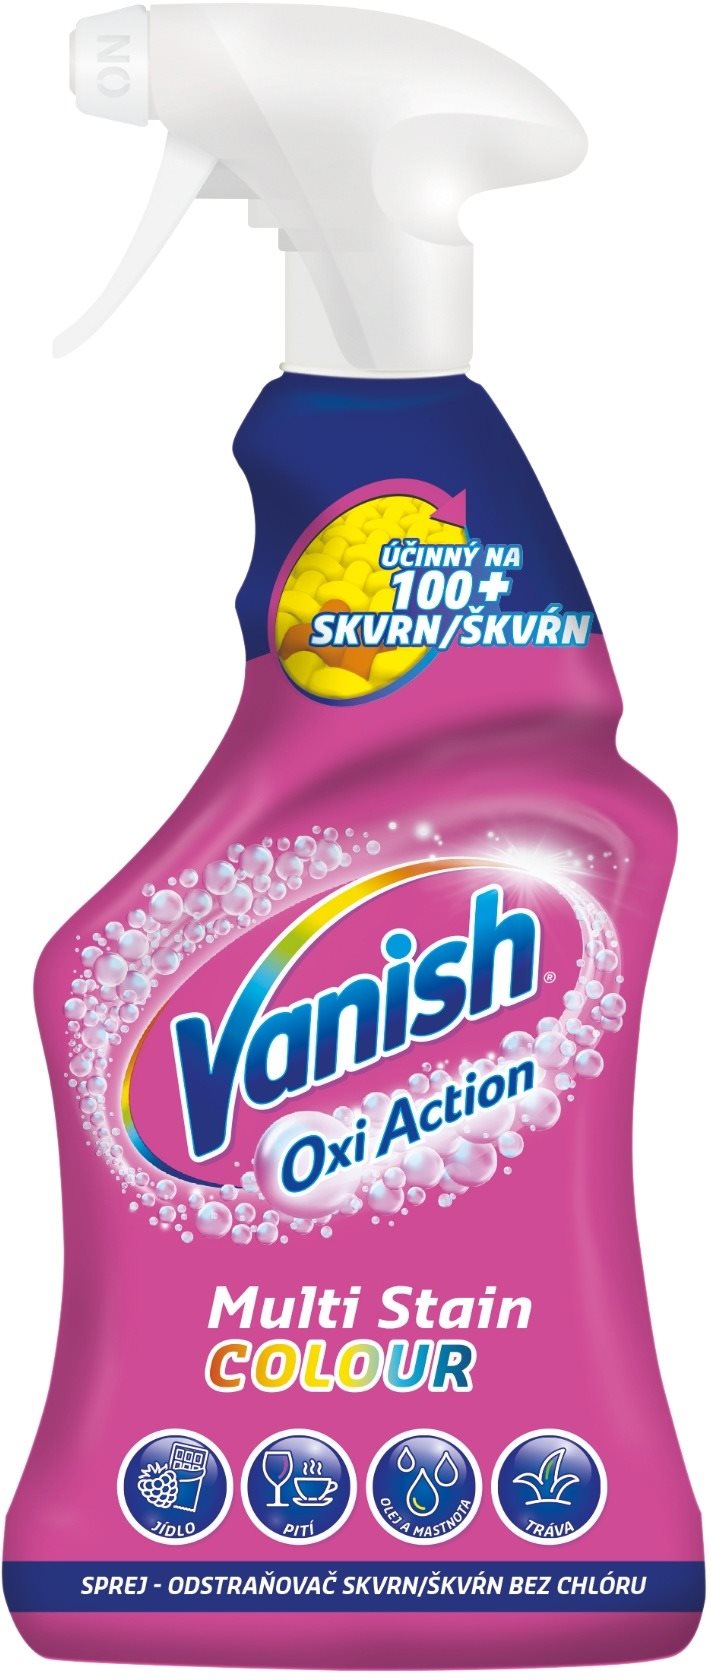 VANISH Oxi Action folteltávolító spray 500 ml